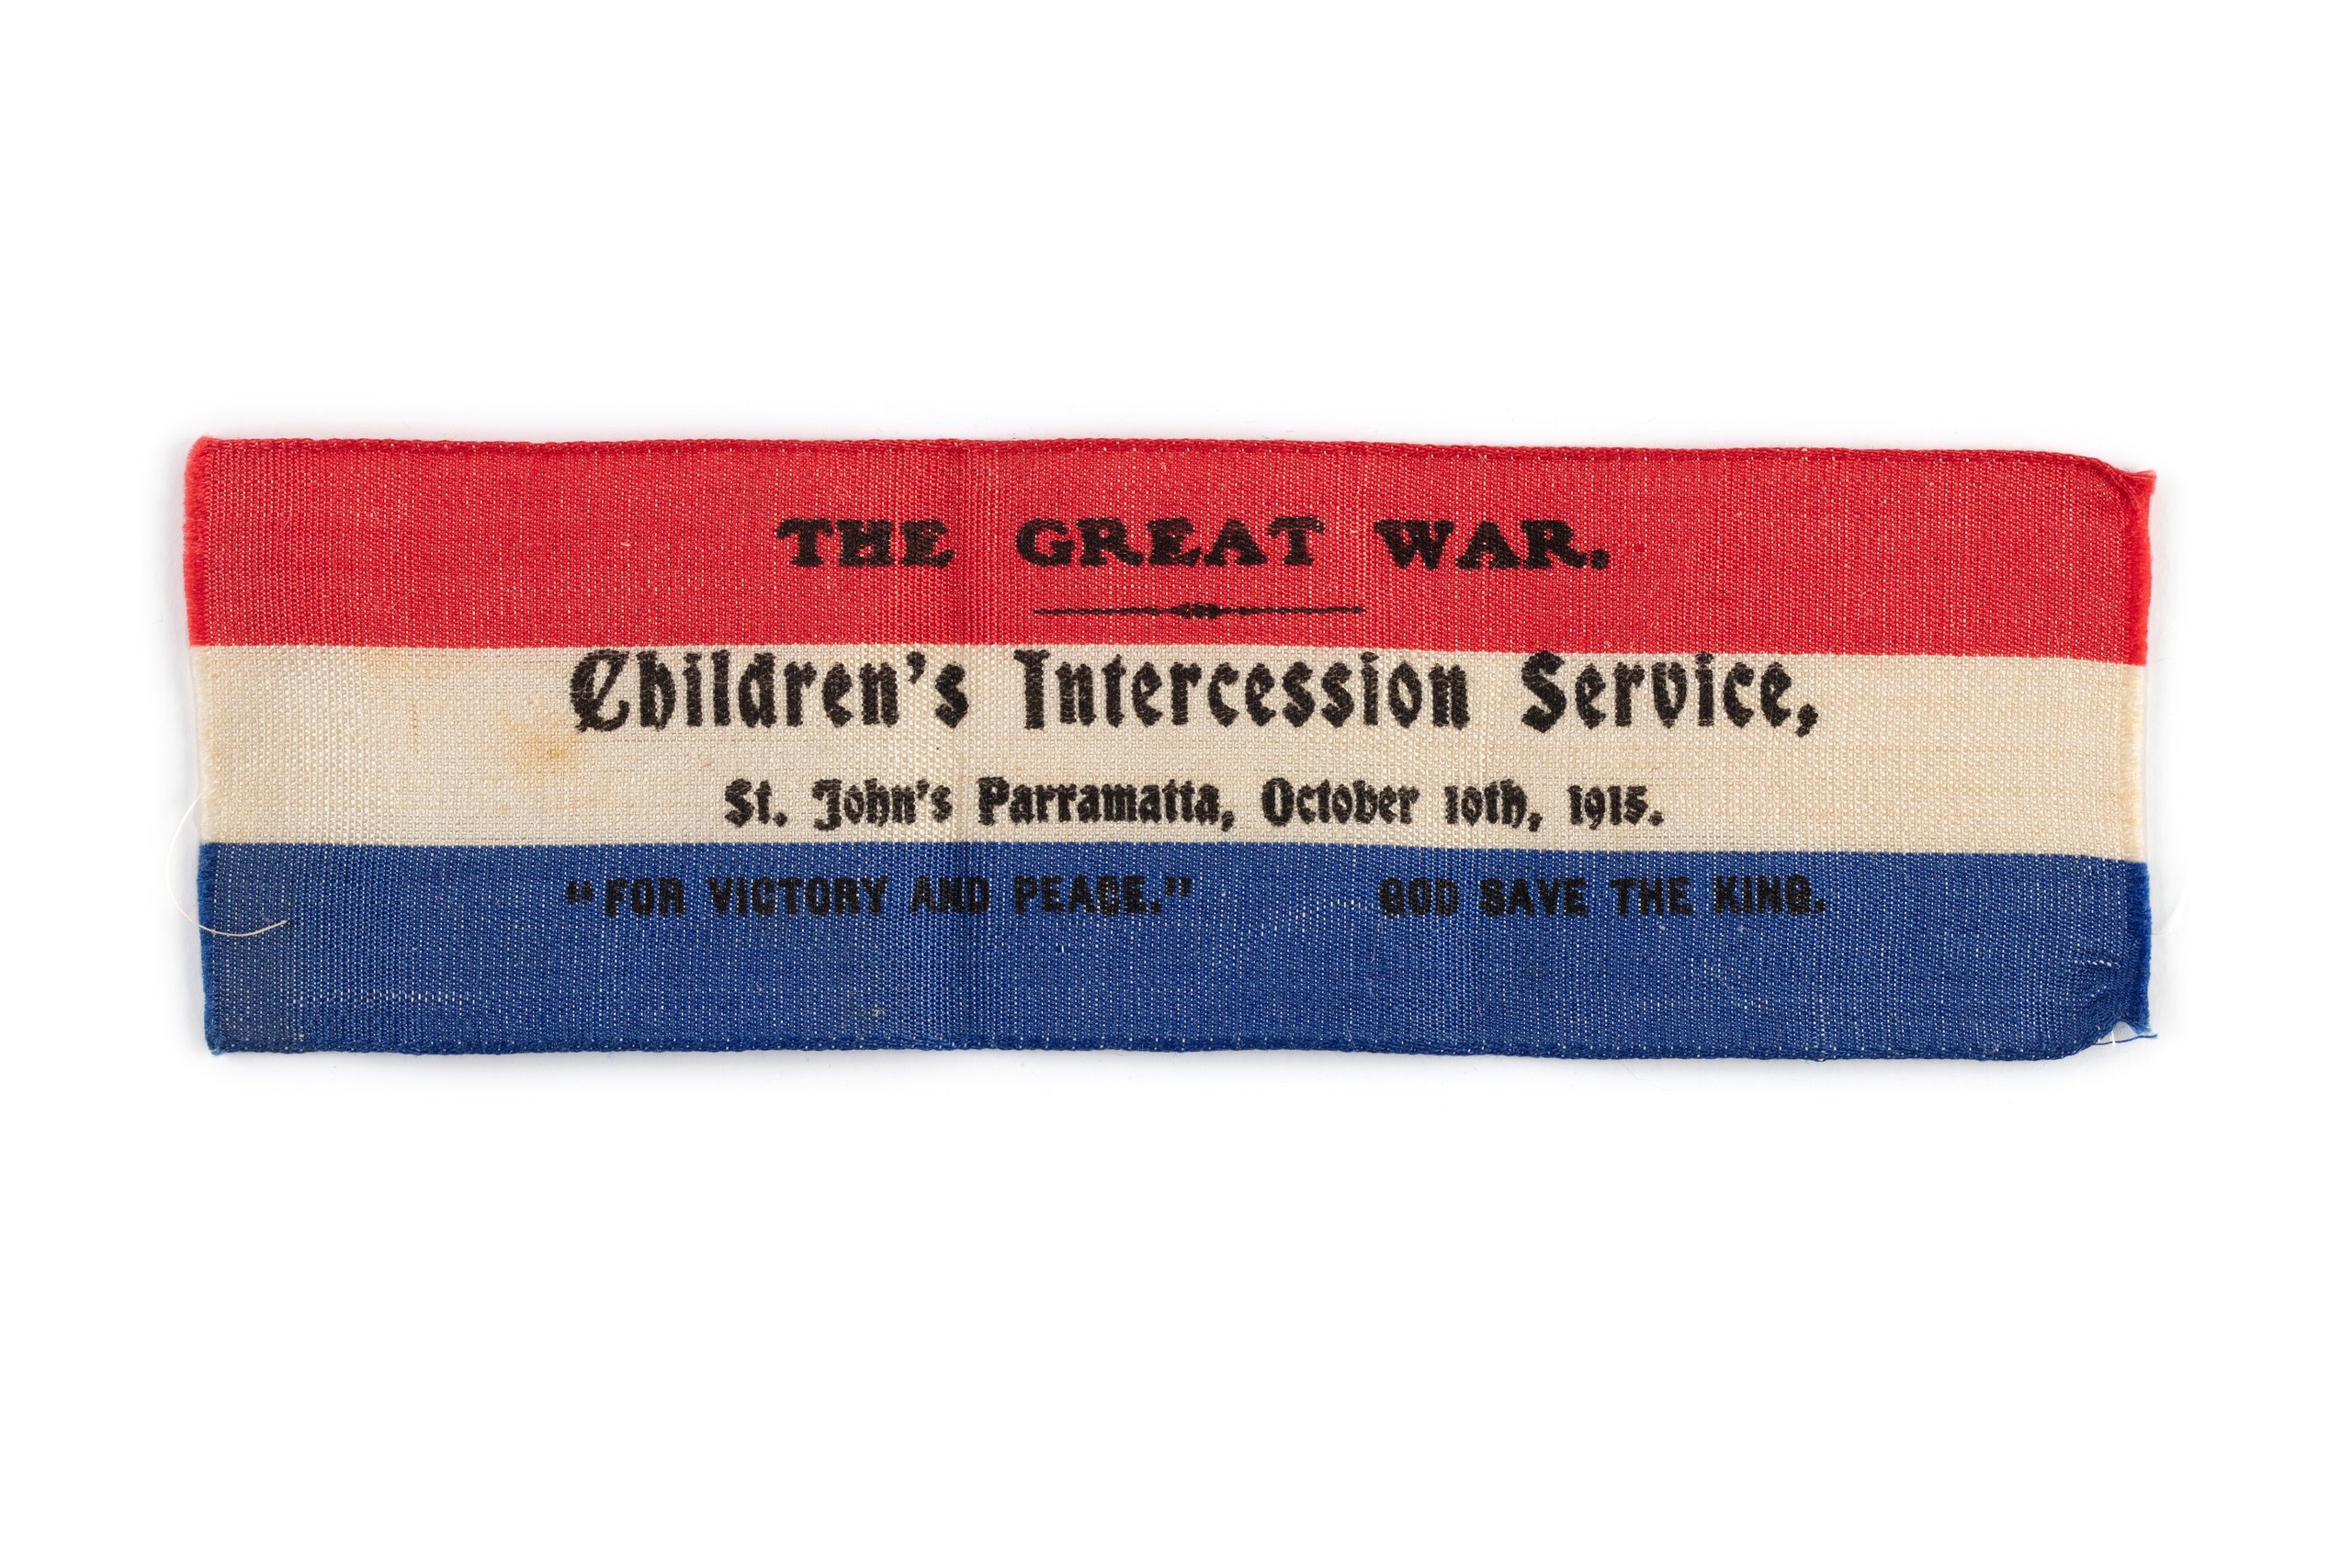 WW I Children's Intercession Service commemorative ribbon